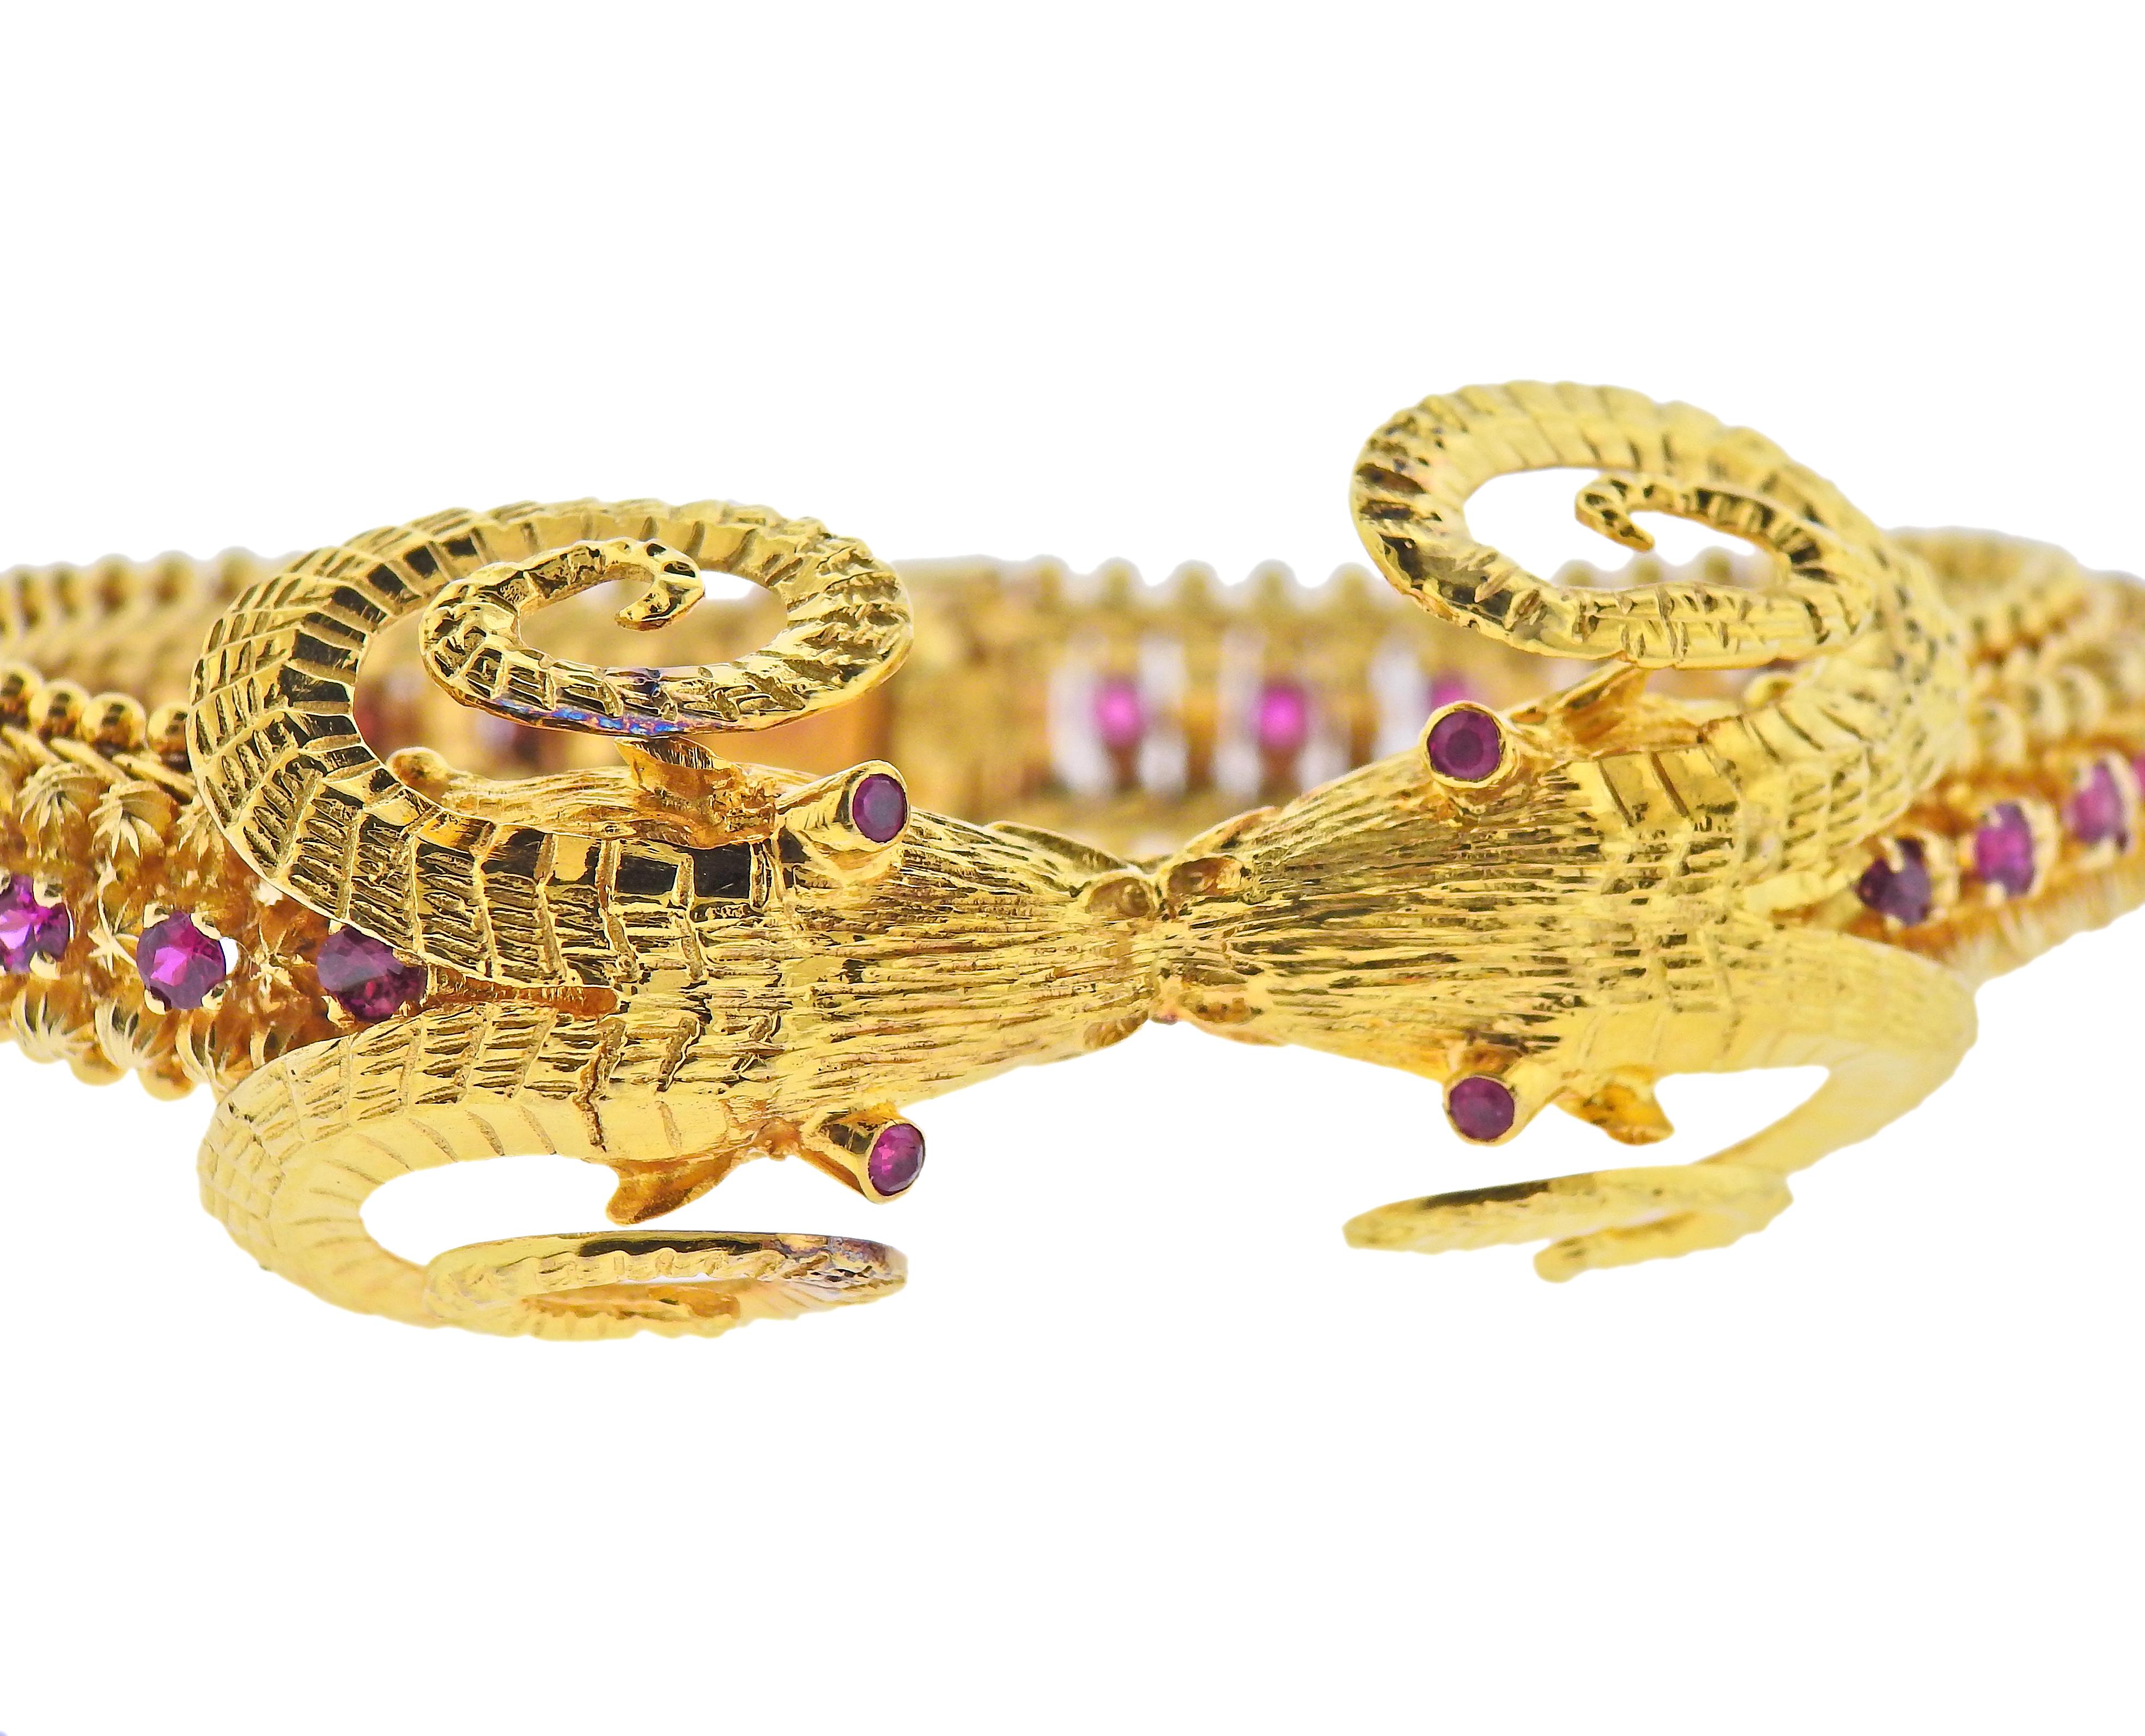 Bracelet en or jaune 18 carats de fabrication grecque, présentant deux têtes de bélier reliées entre elles et décorées de rubis. Le bracelet fait 7